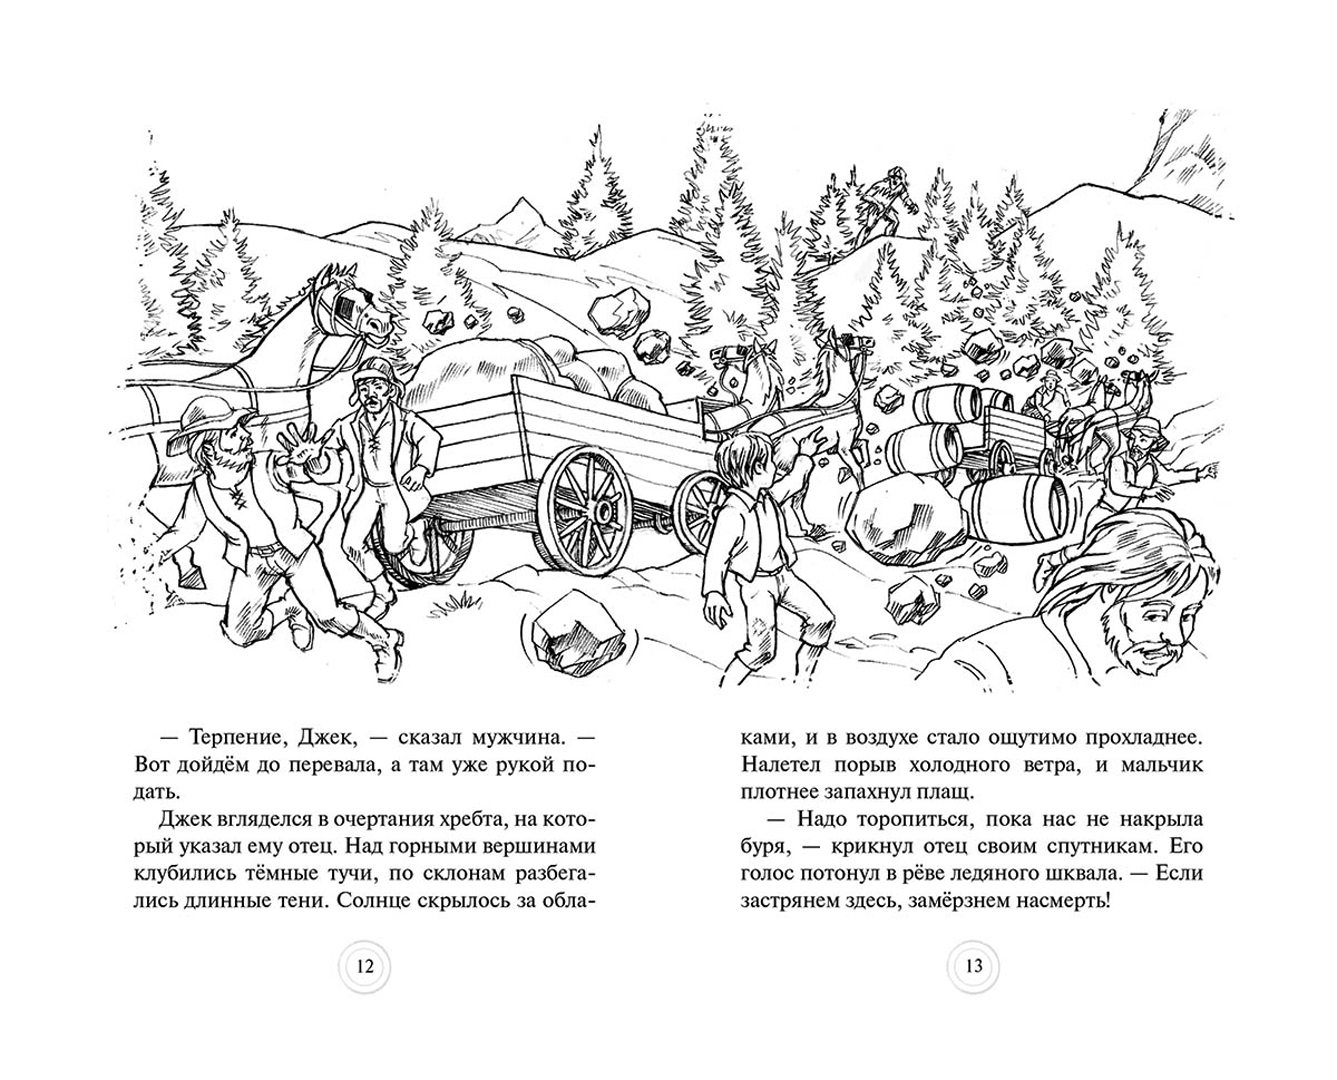 Иллюстрация 1 из 7 для Аркта - горный великан. Тагус - кентавр - Адам Блейд | Лабиринт - книги. Источник: Лабиринт